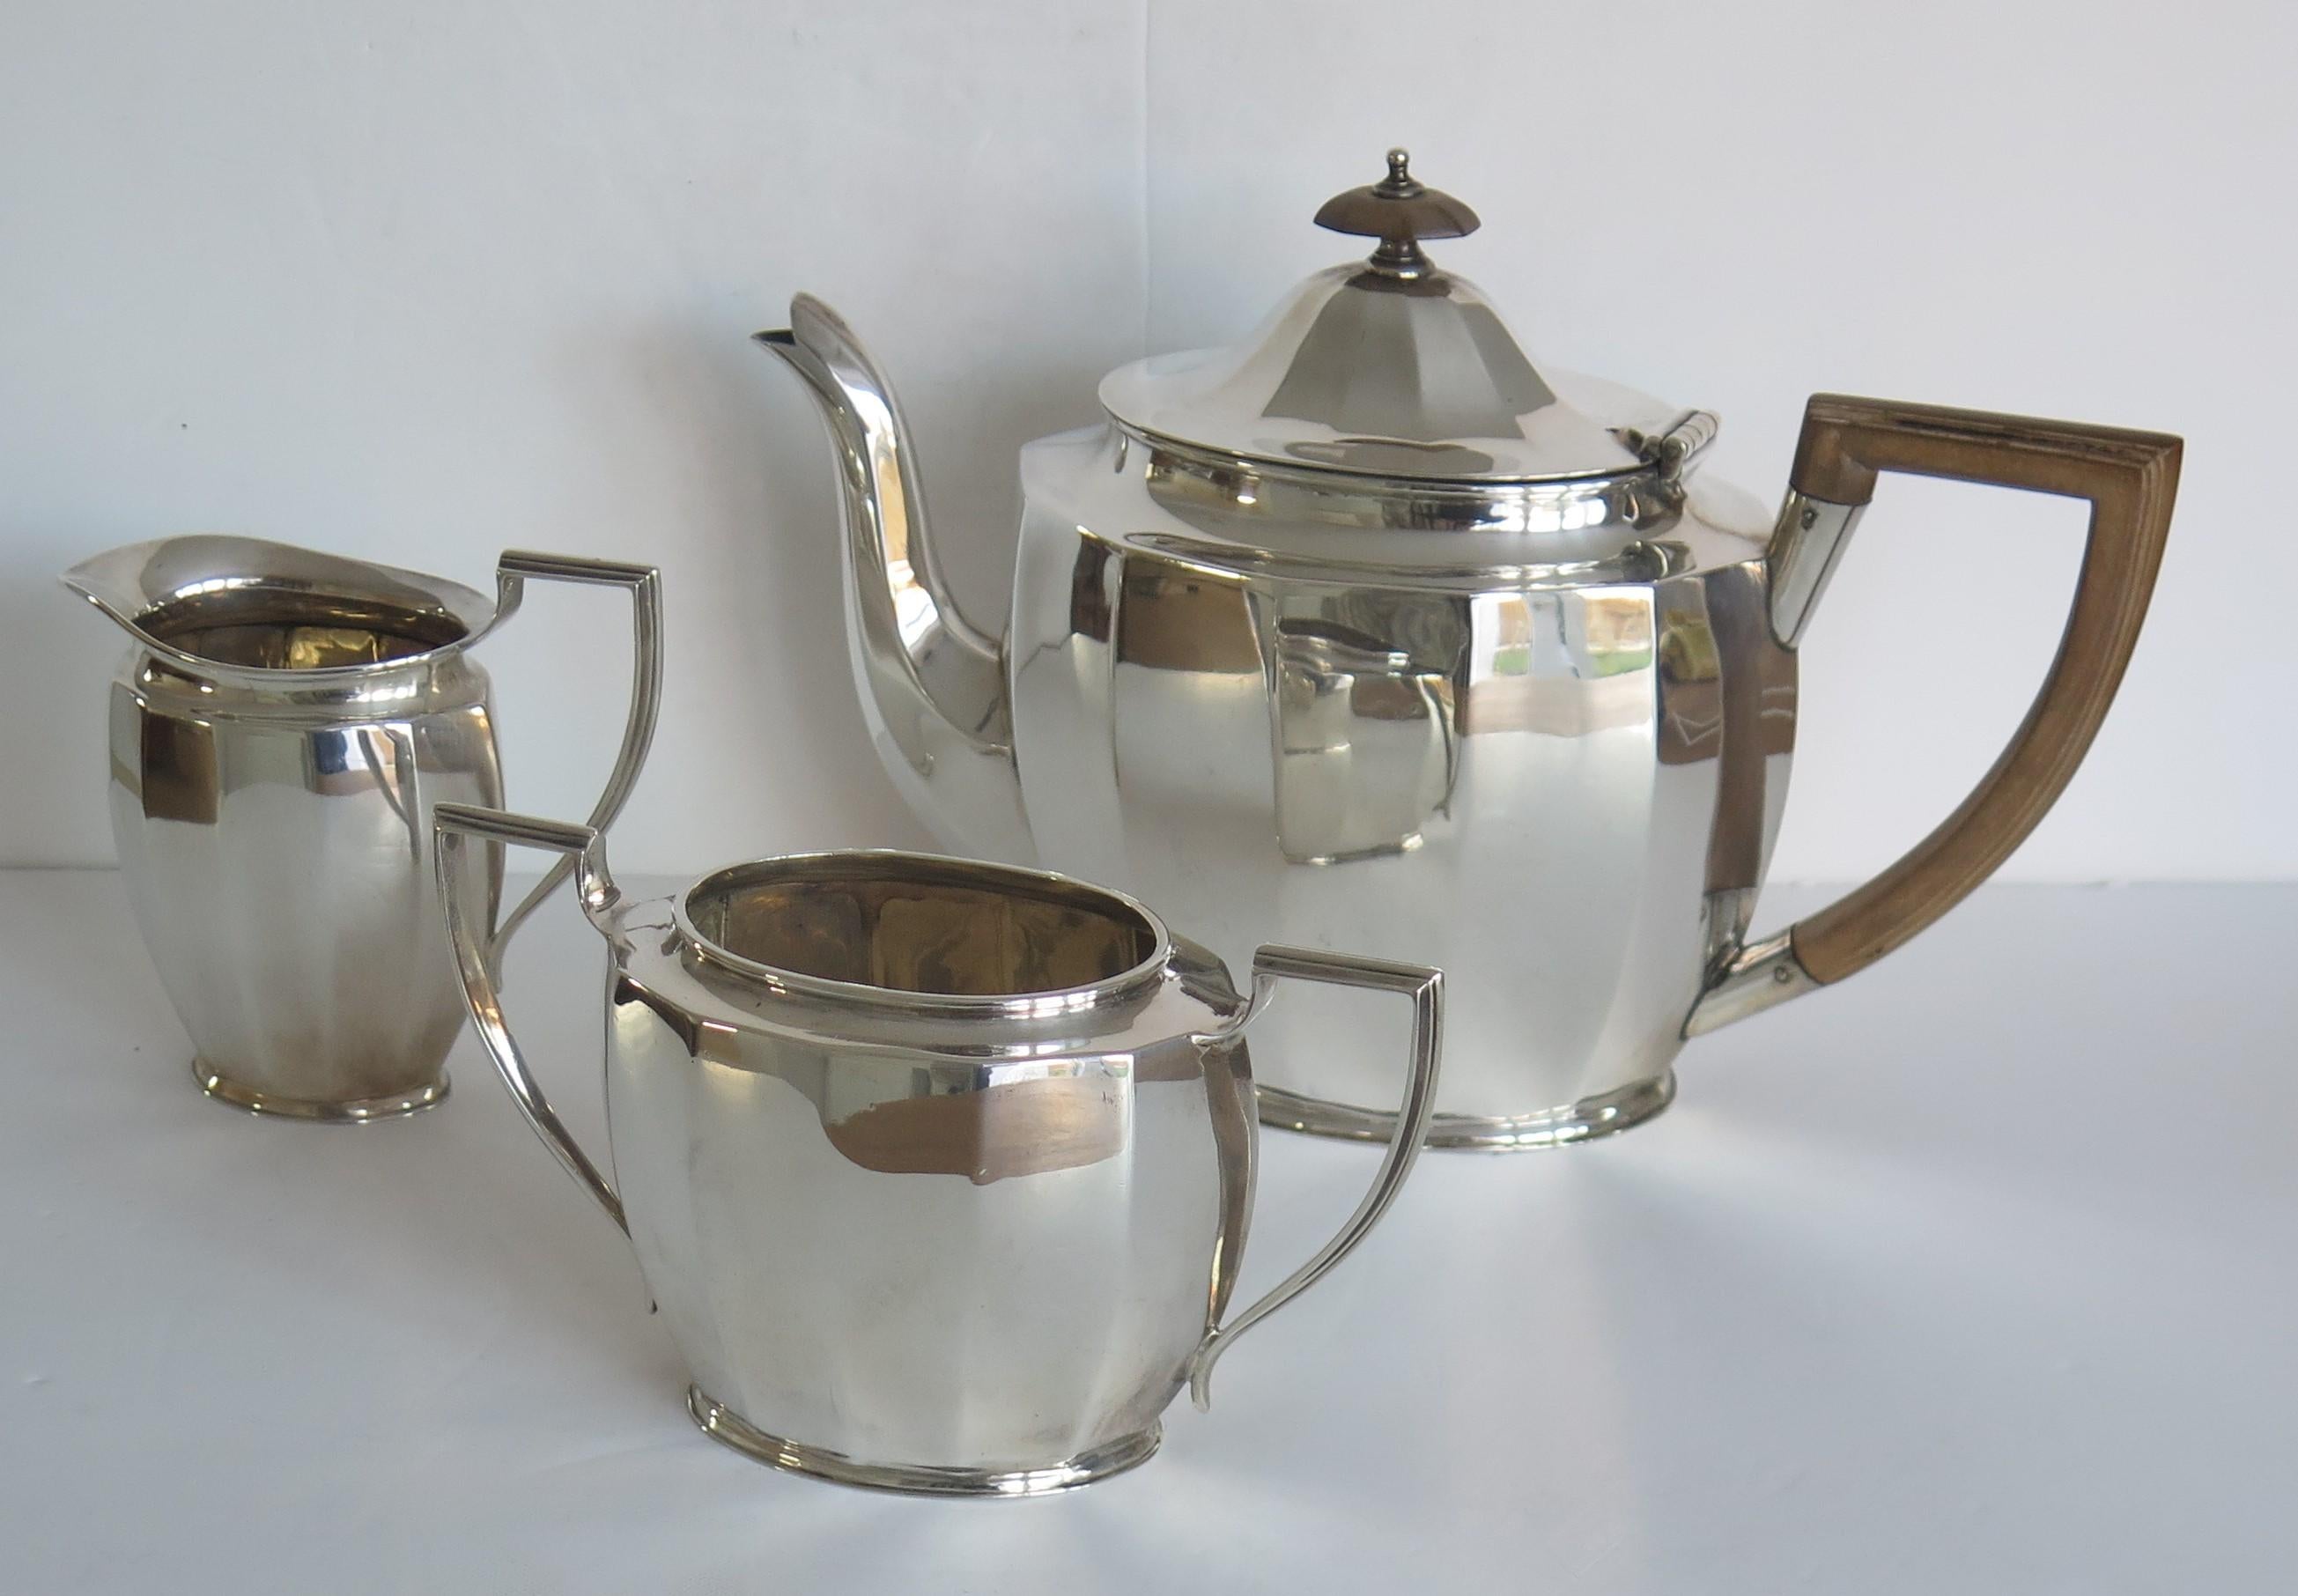 Dies ist eine feine Qualität Sterling Silber, Art Deco Zeitraum, 3-teilige Tee-Set, bestehend aus Teekanne, Milchkännchen und Sugar Bowl, von Cooper Brothers & Sons of Sheffield, England im Jahr 1930 gemacht.

Alle Stücke haben eine sehr